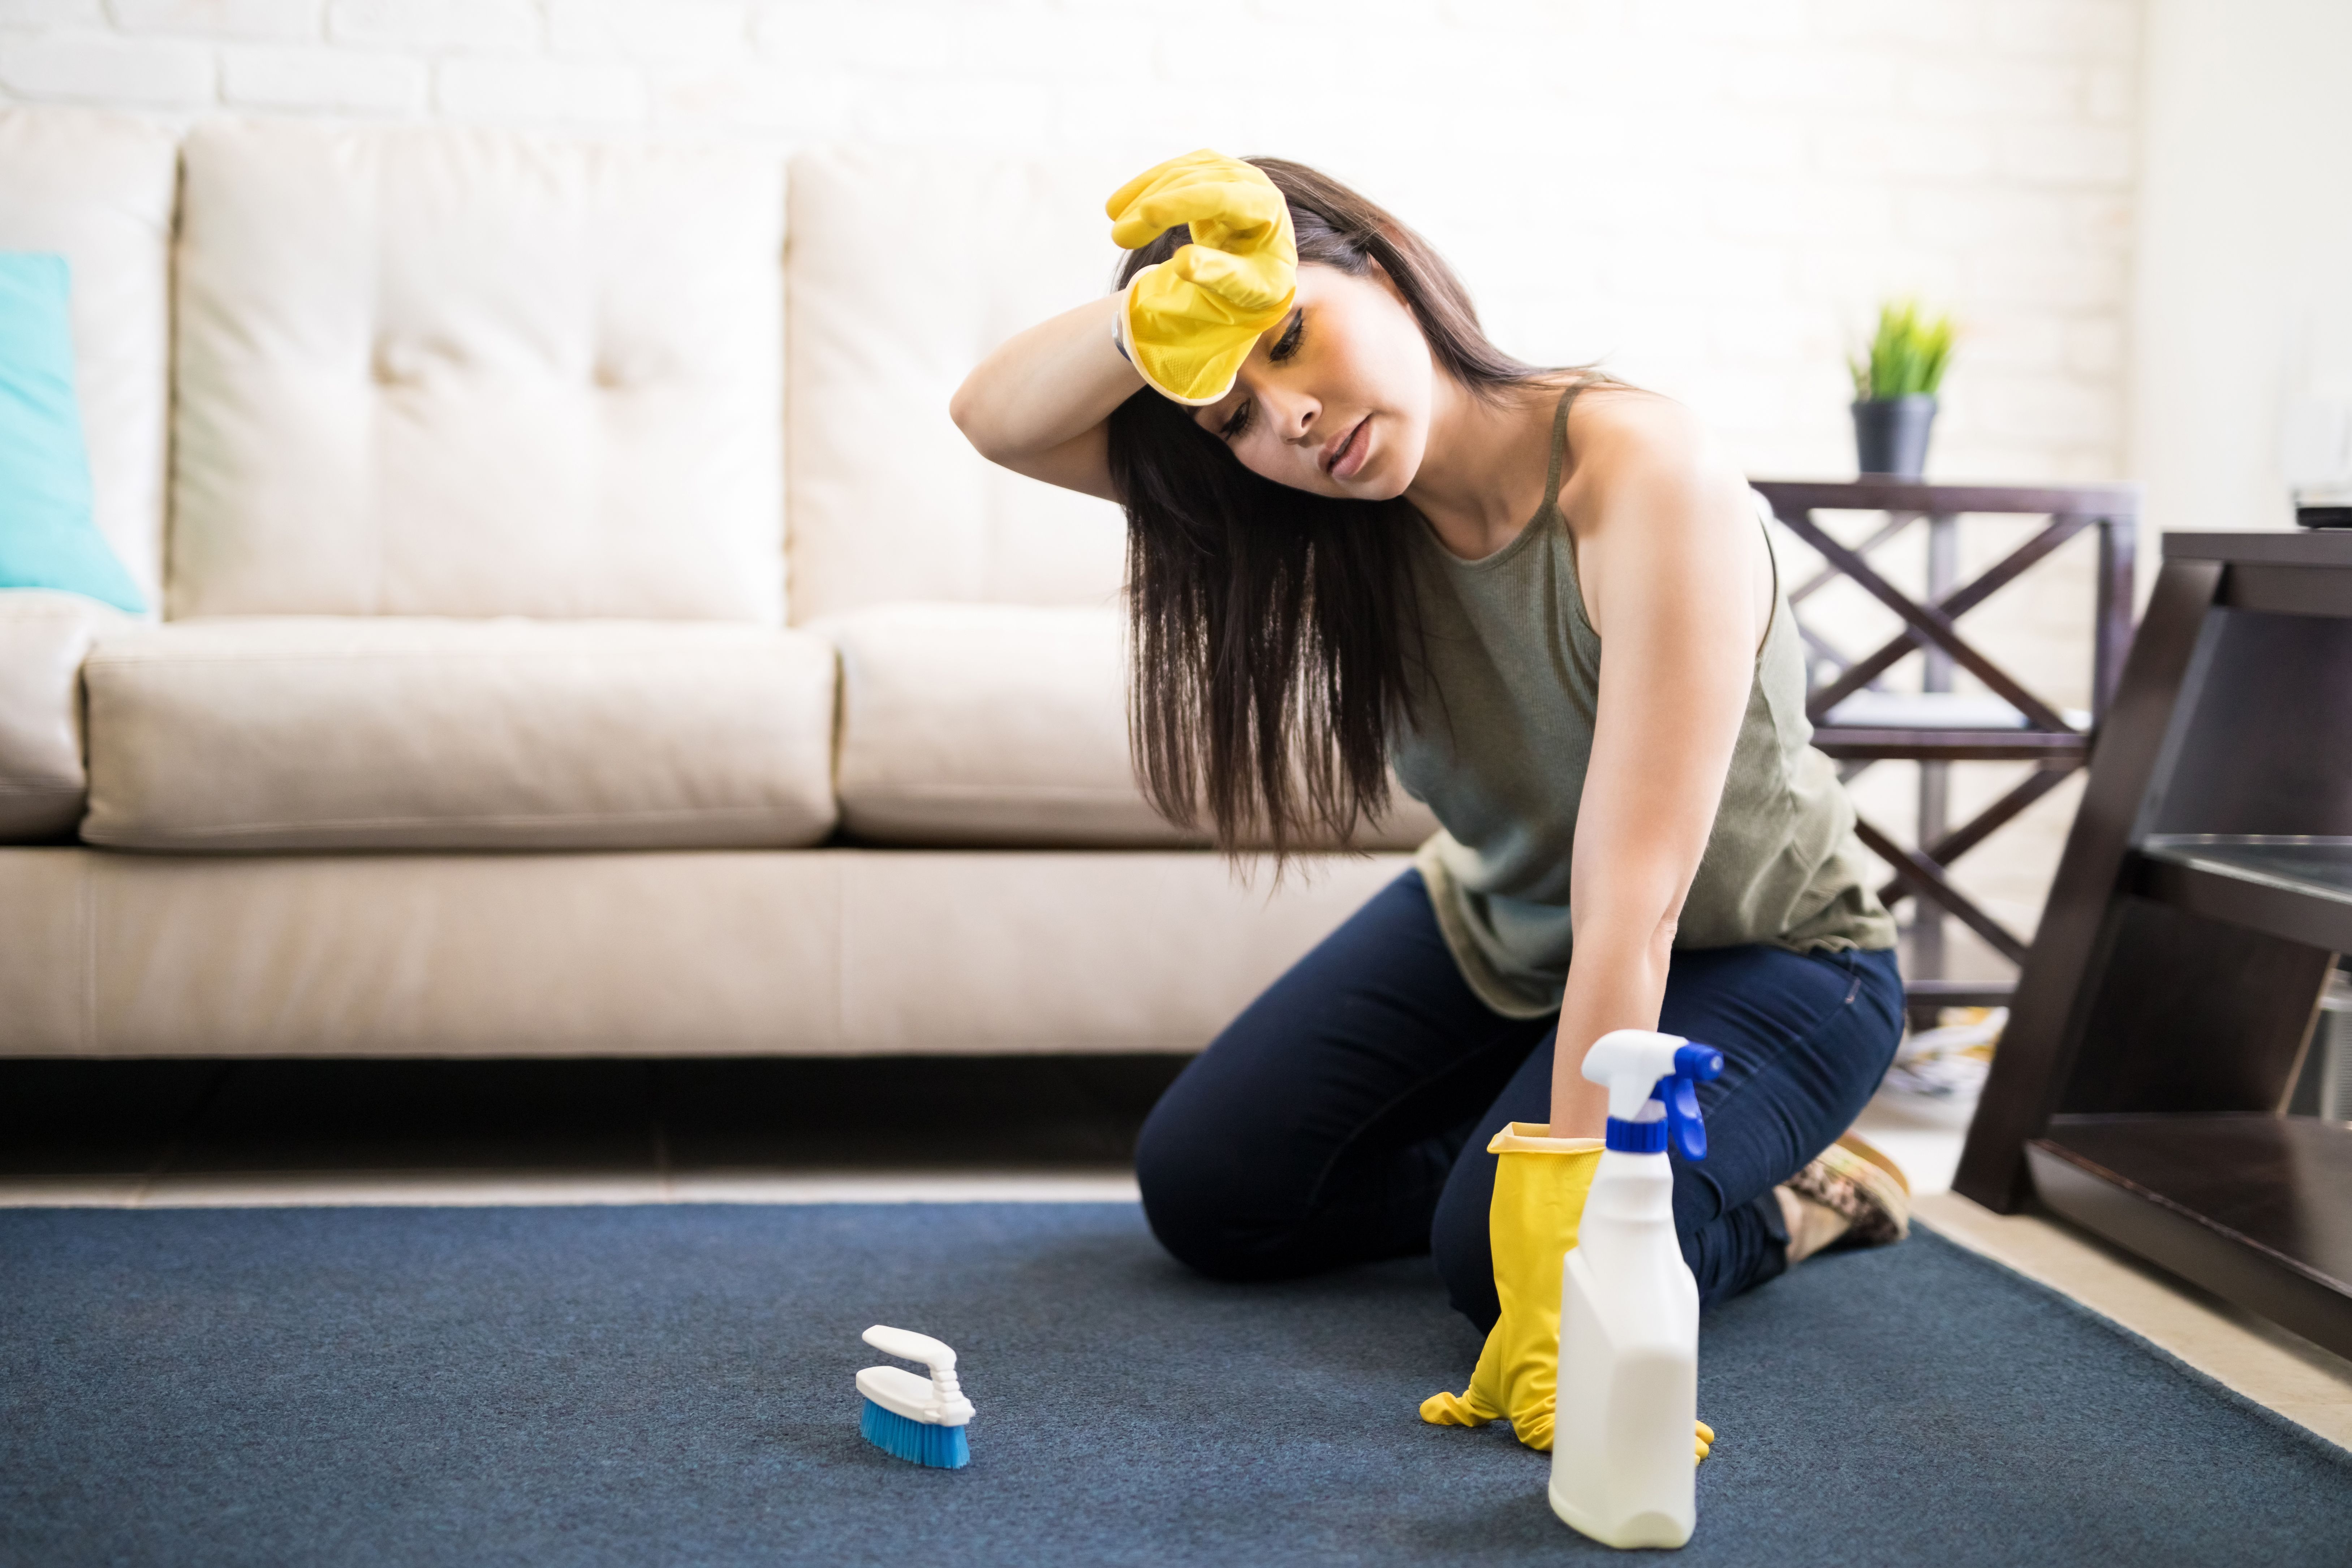 Une jeune femme en train de nettoyer le tapis. | Source : Getty Images